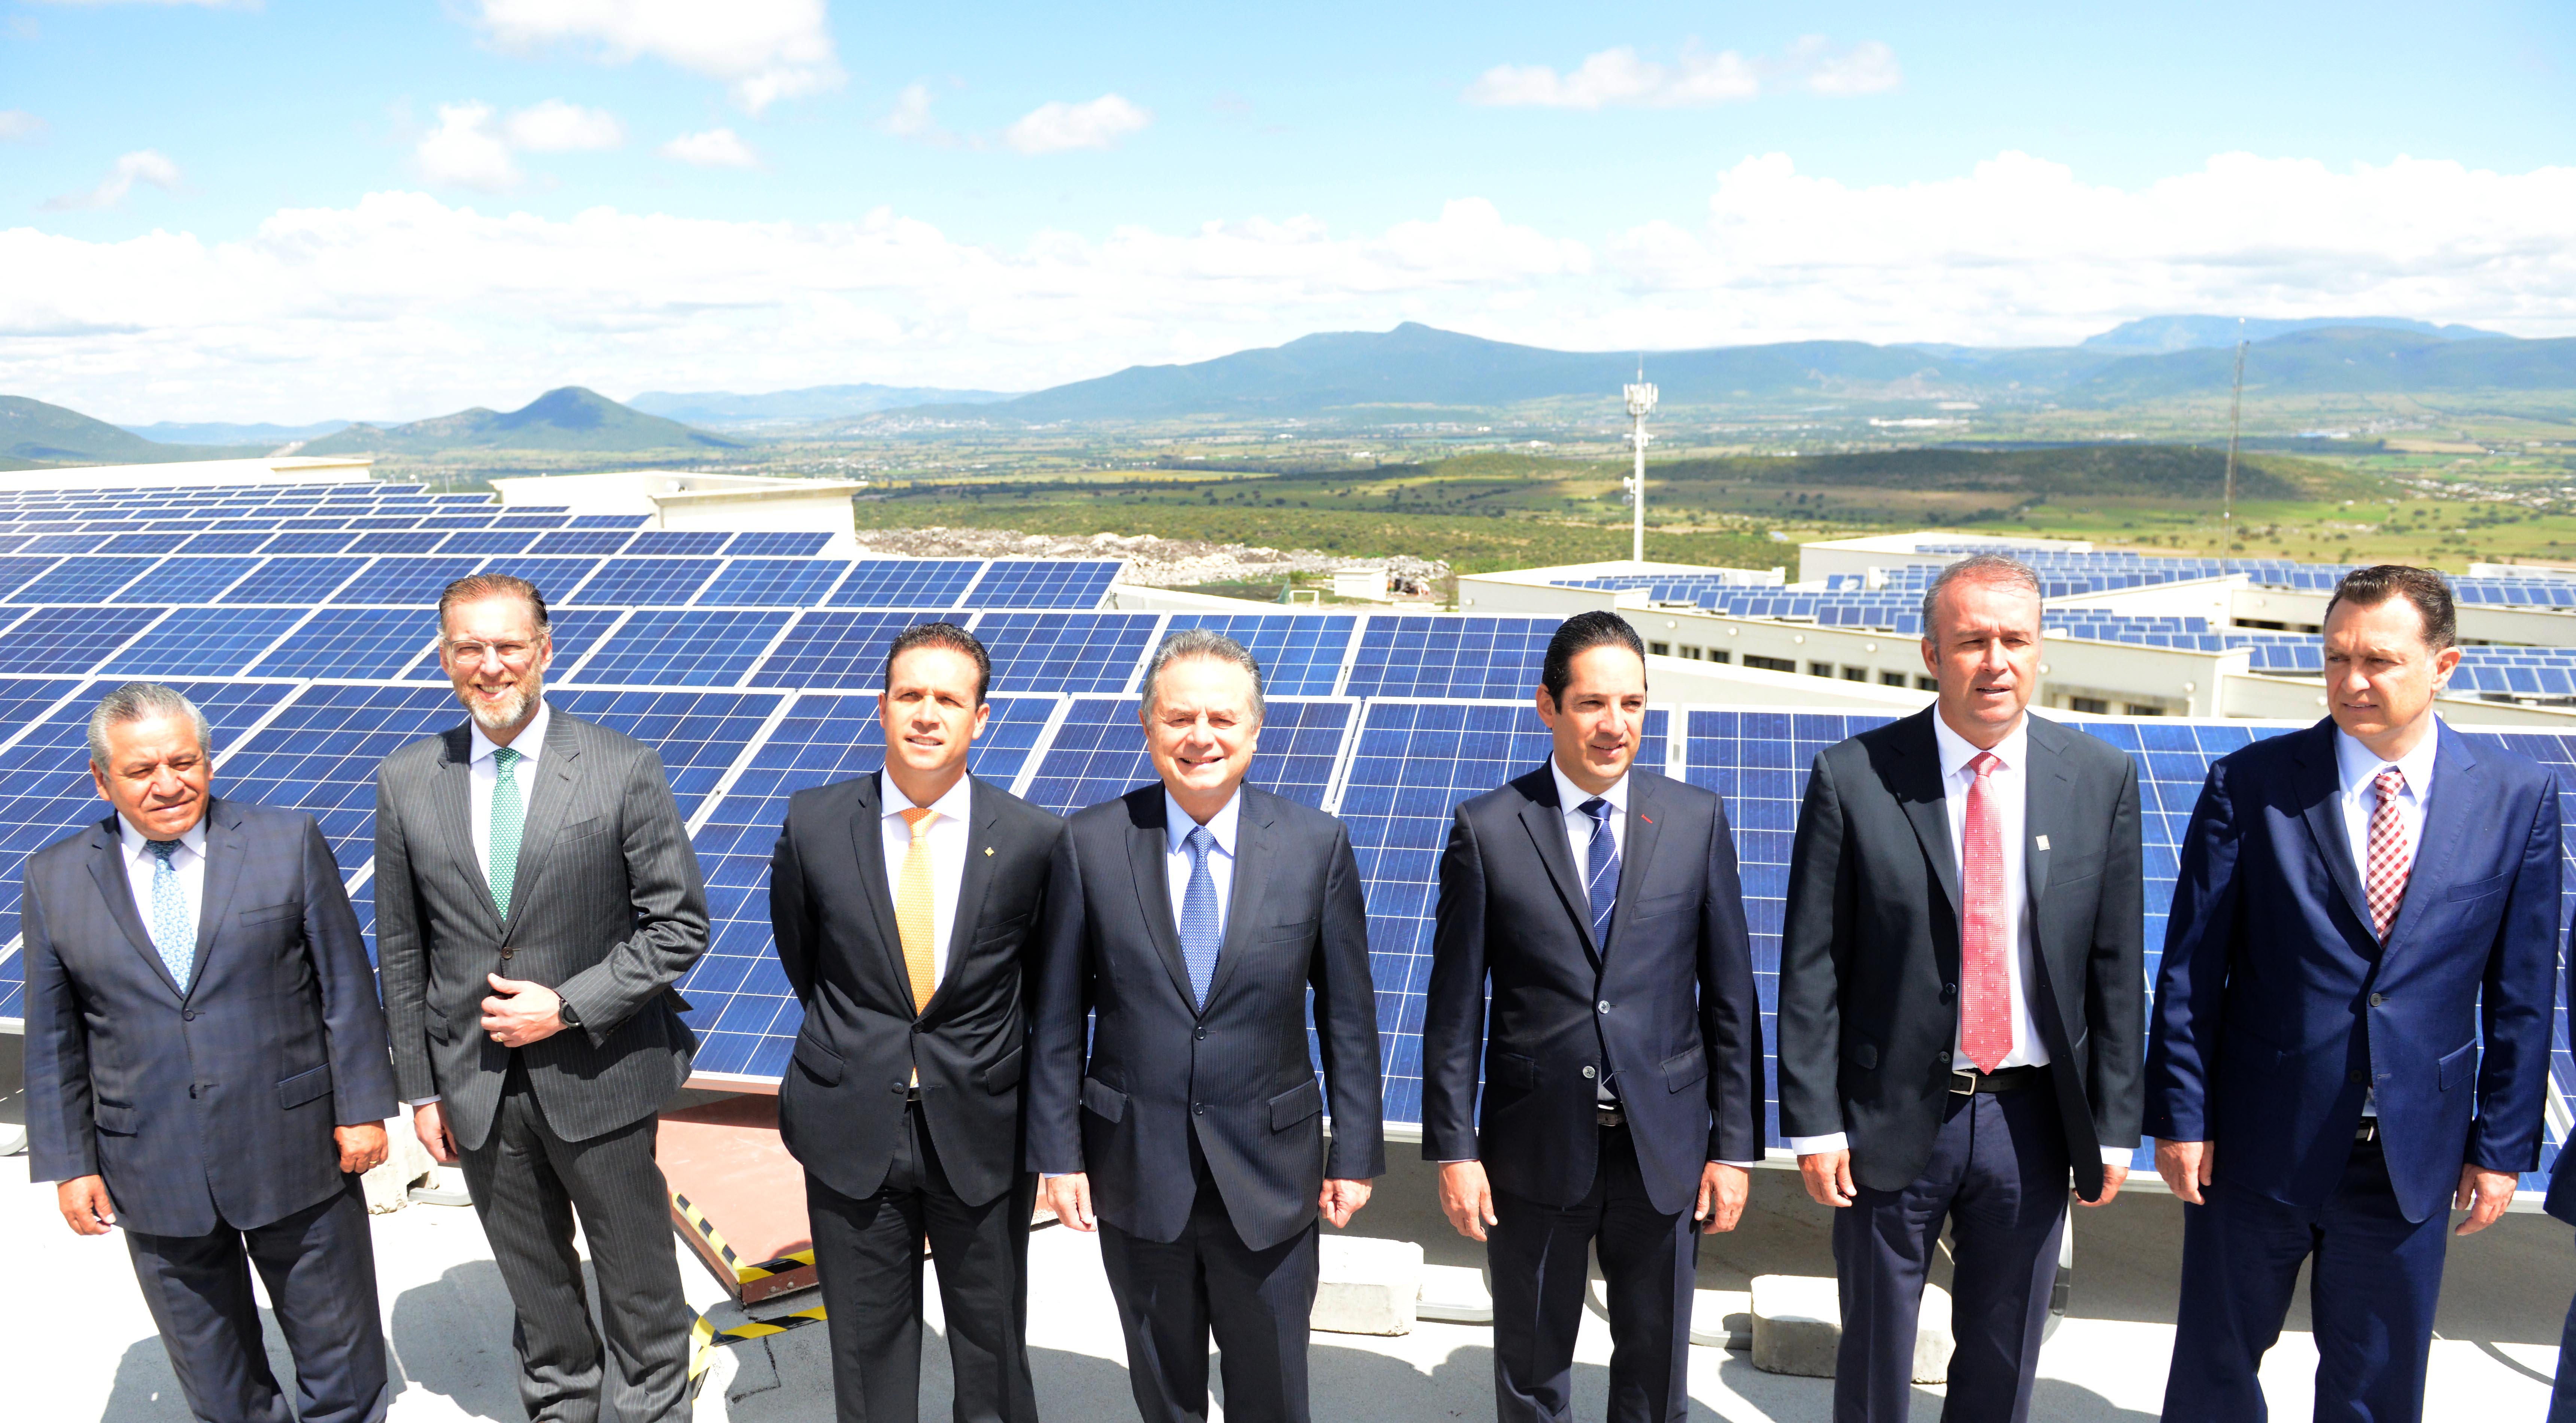 El Secretario Pedro Joaquín Coldwell participó en la inauguración del sistema fotovoltaico de la Universidad Anáhuac de Querétaro, junto con el Gobernador de la entidad, Francisco Domínguez Servien y el Rector del Campus, Luis Eduardo Alverde.